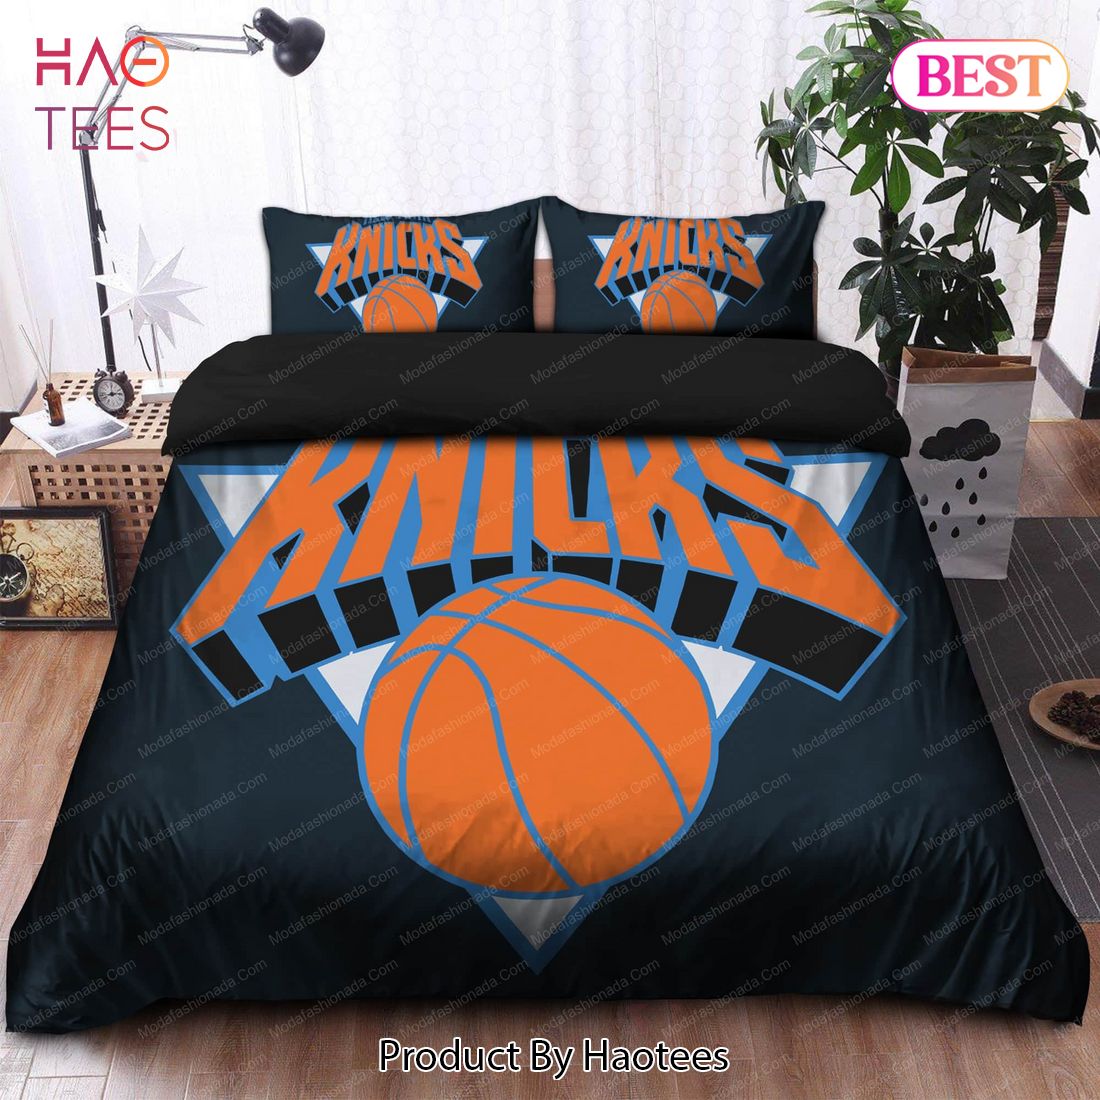 Buy 1996-2011 Logo New York Knicks NBA 166 Bedding Sets Bed Sets, Bedroom Sets, Comforter Sets, Duvet Cover, Bedspread